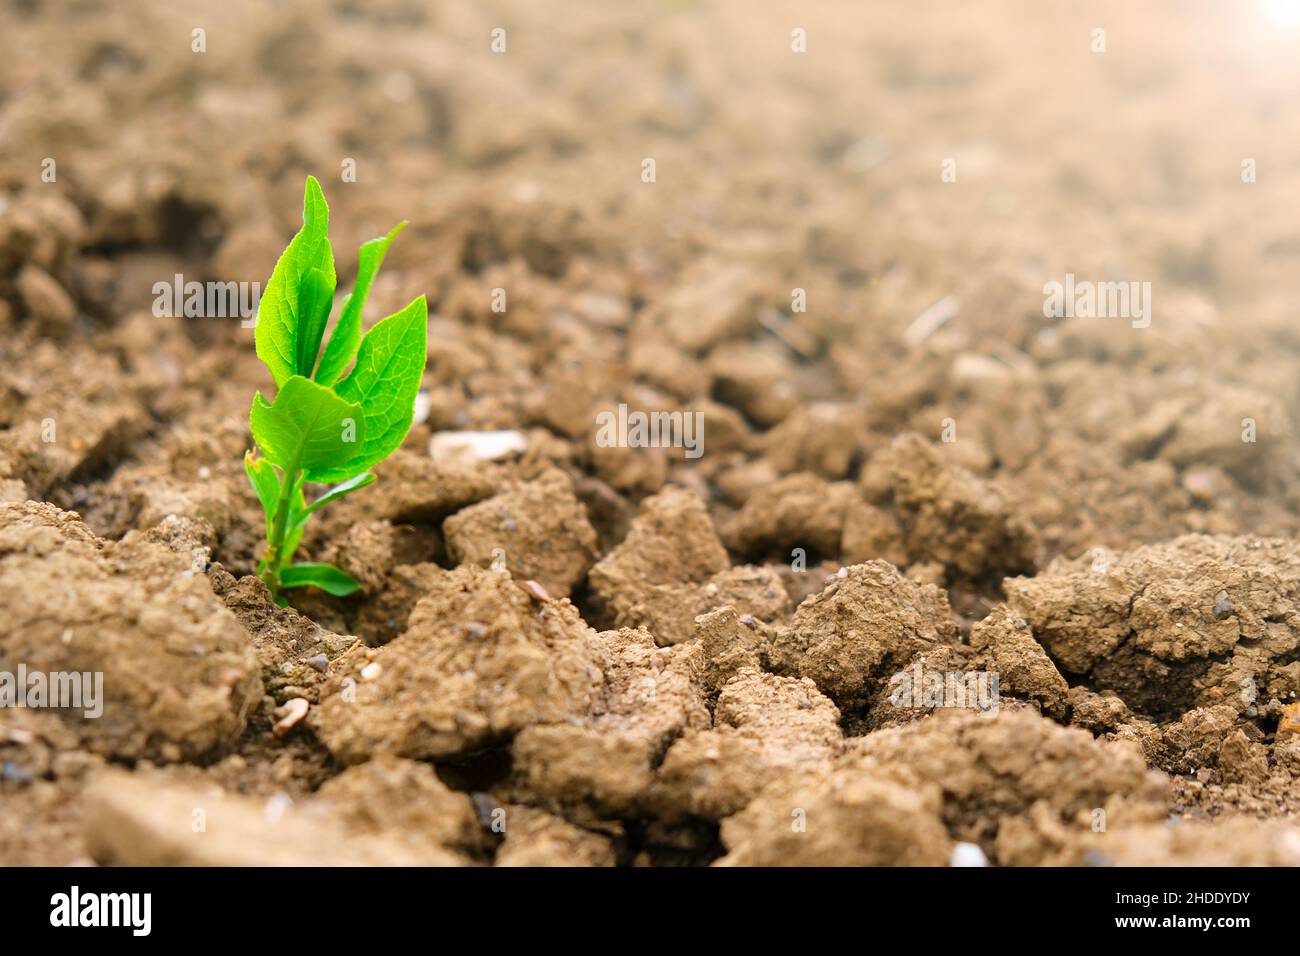 Nuevo concepto de vida. Brotes verdes en tierra seca agrietada. Concepto de agricultura y agricultura. Plántulas verdes en el suelo en el campo. Foto de stock